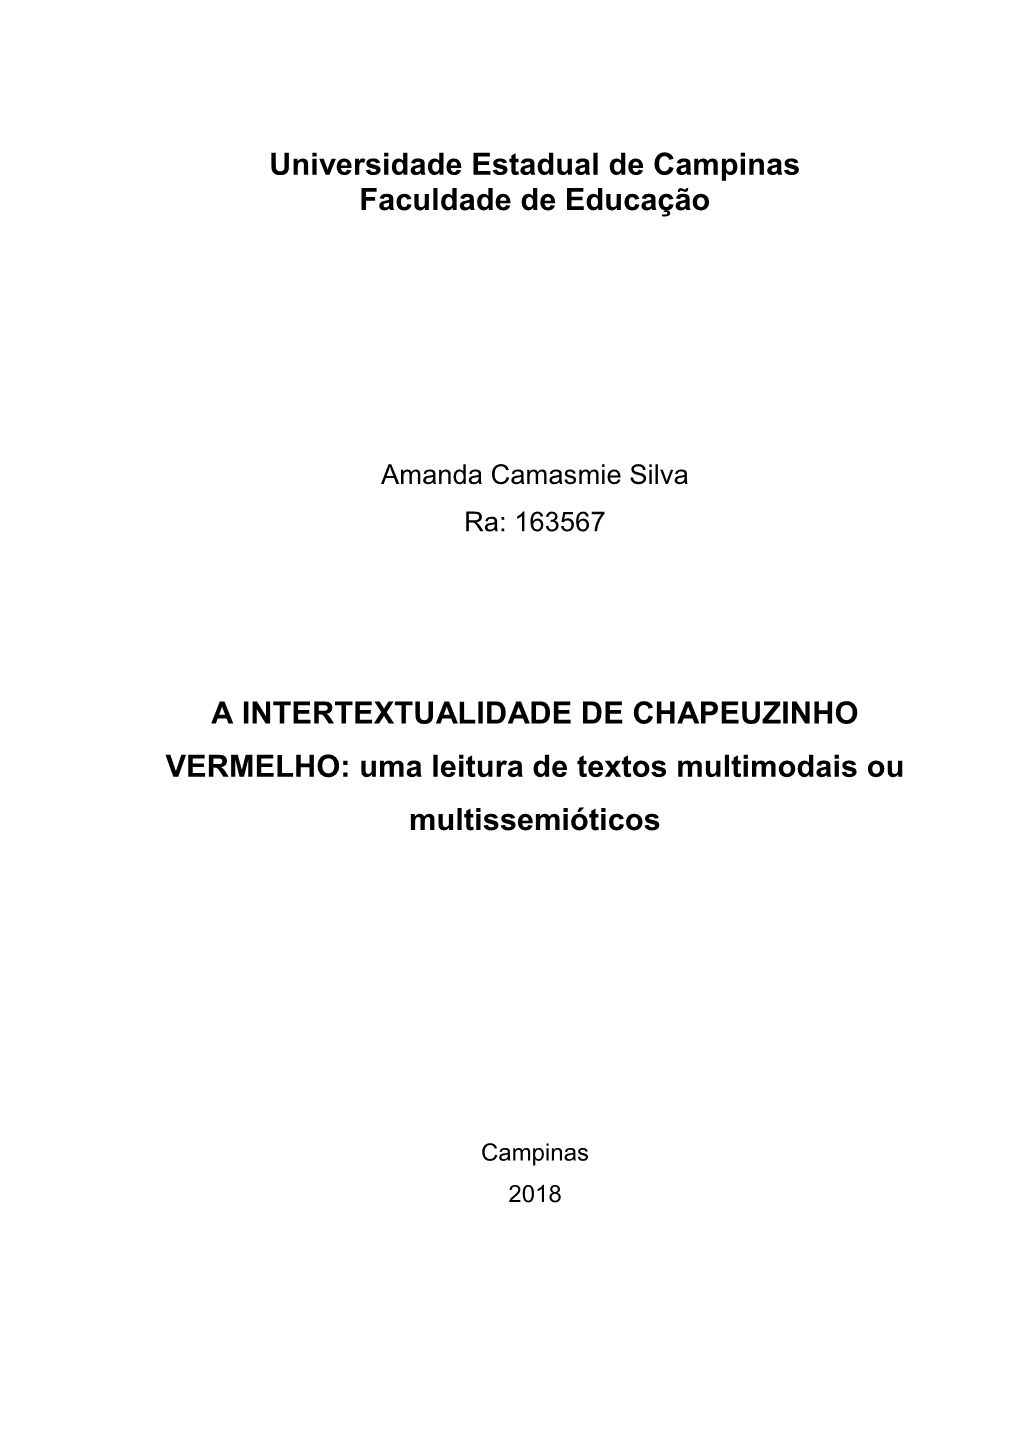 A INTERTEXTUALIDADE DE CHAPEUZINHO VERMELHO: Uma Leitura De Textos Multimodais Ou Multissemióticos